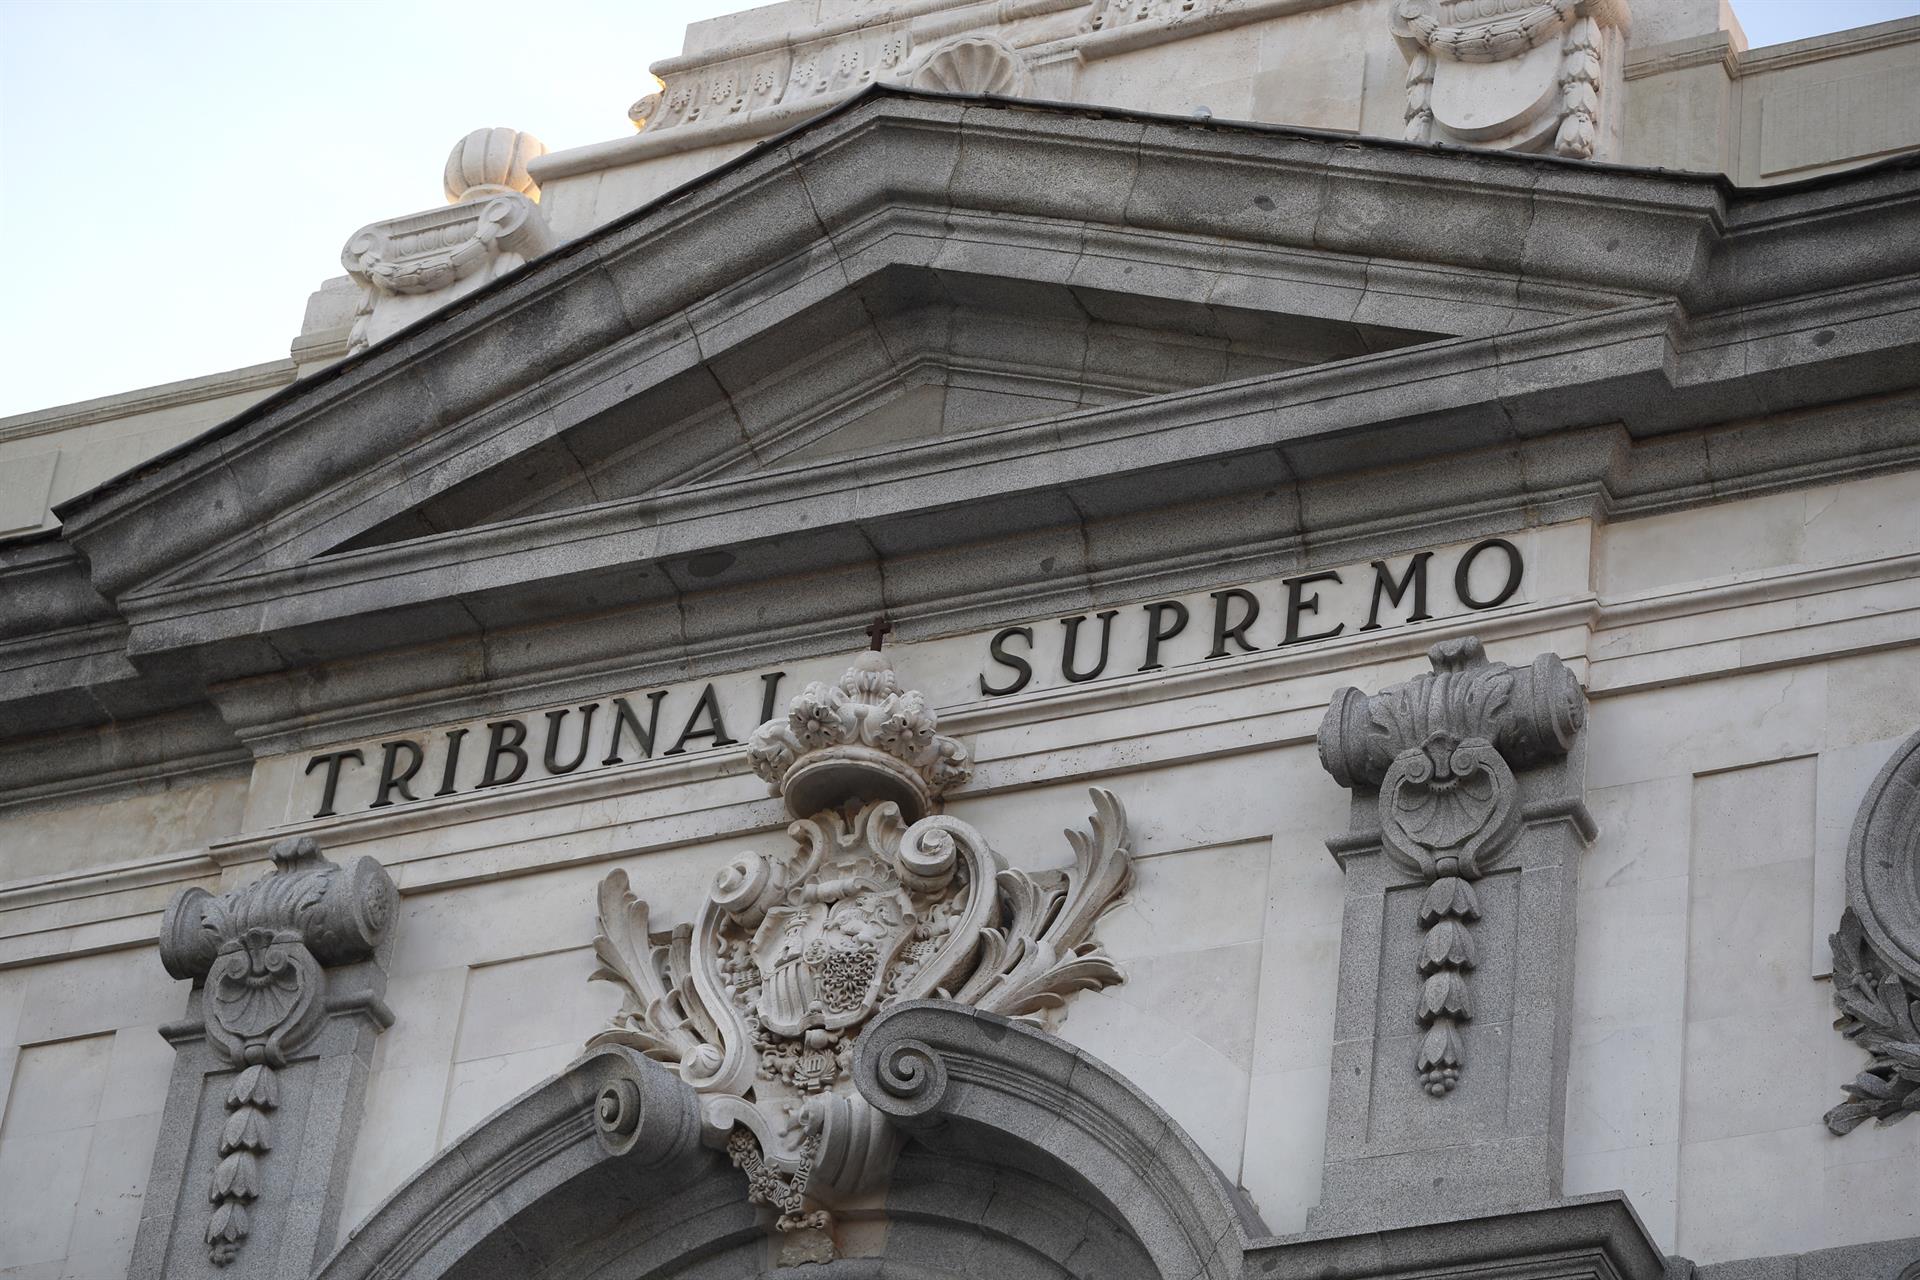 Detalle de la fachada del Tribunal Supremo. EFE/Javier Lizón/Archivo